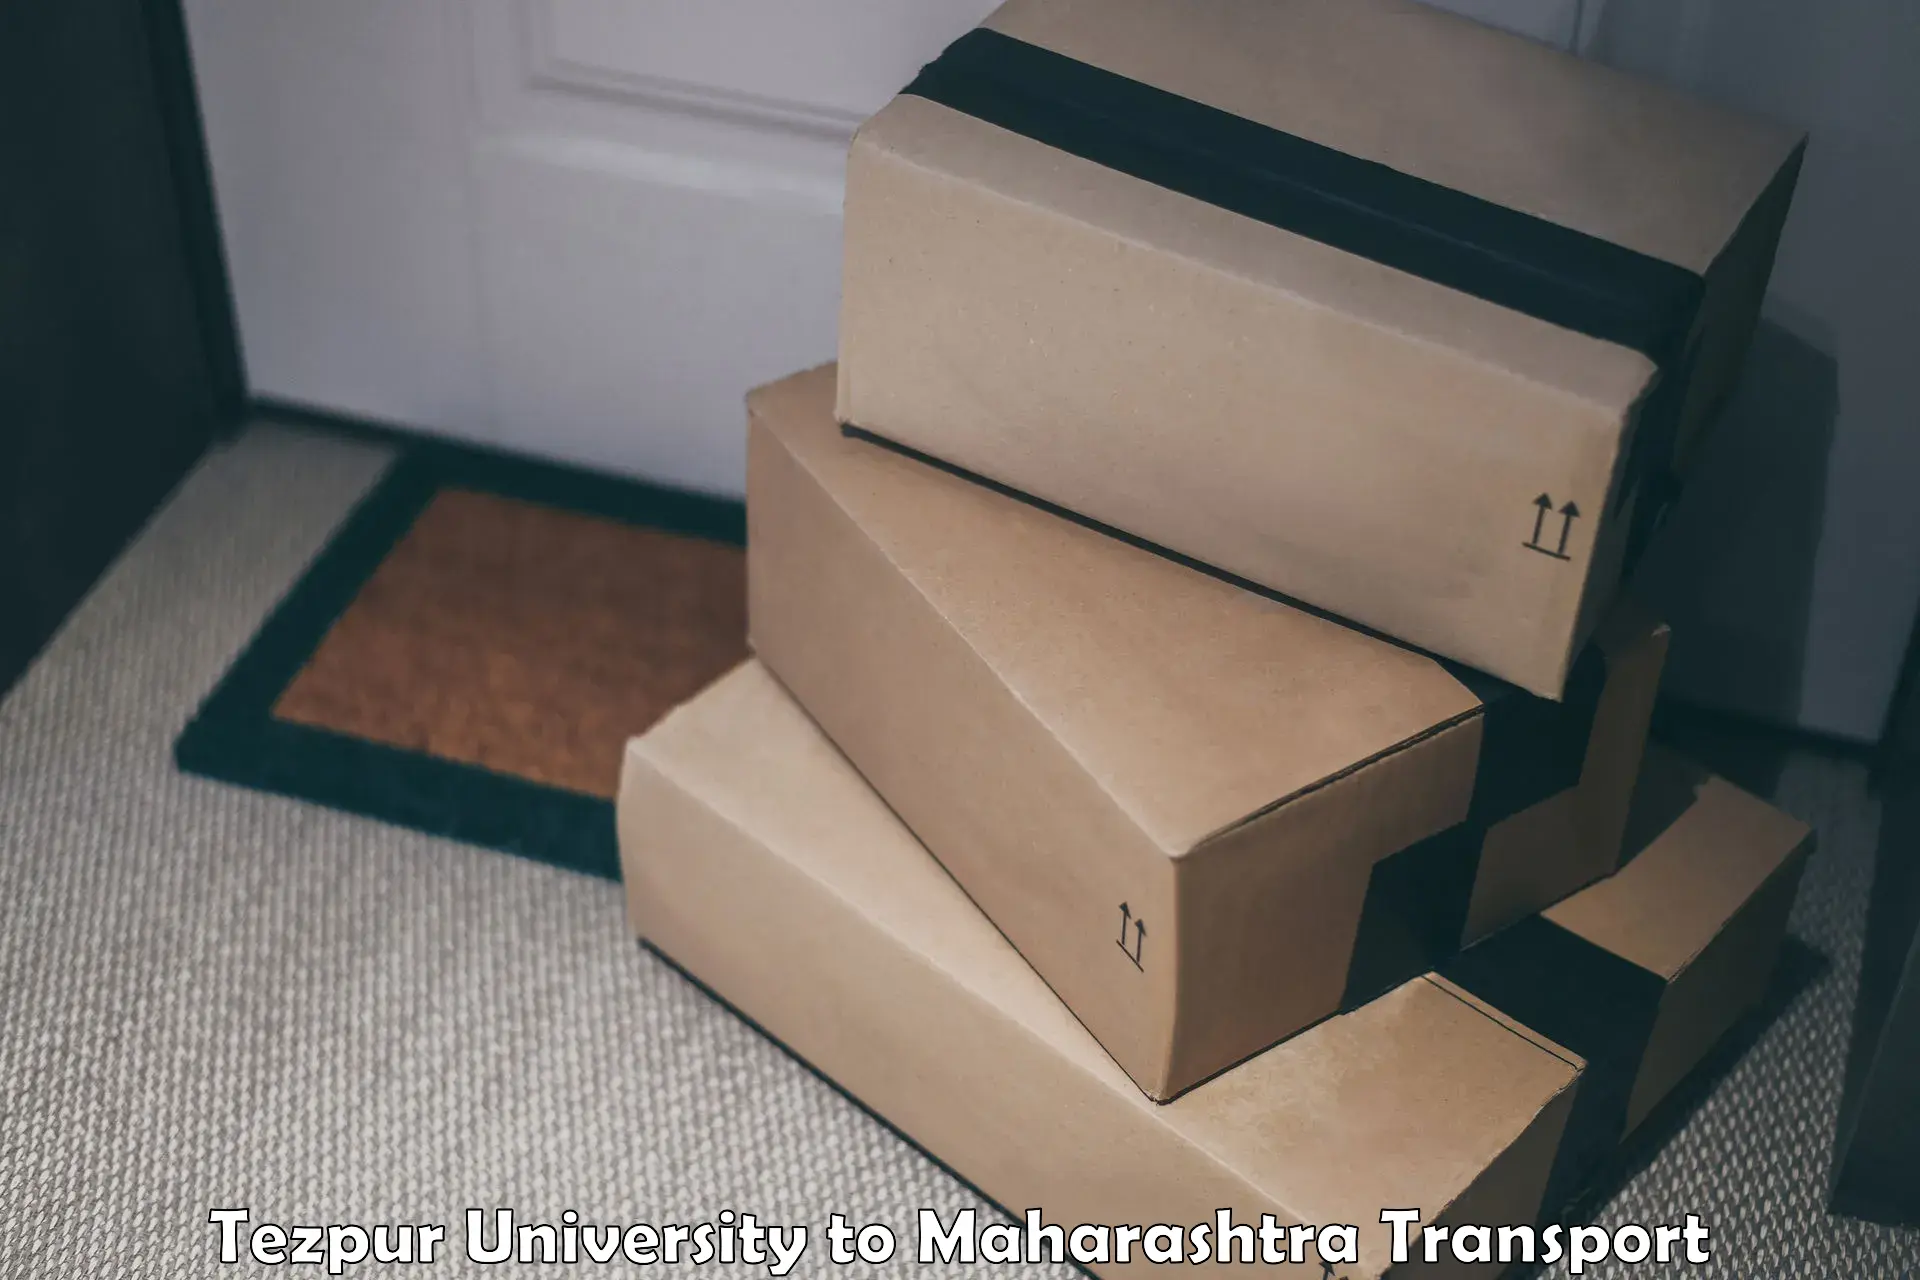 Commercial transport service Tezpur University to Maharashtra